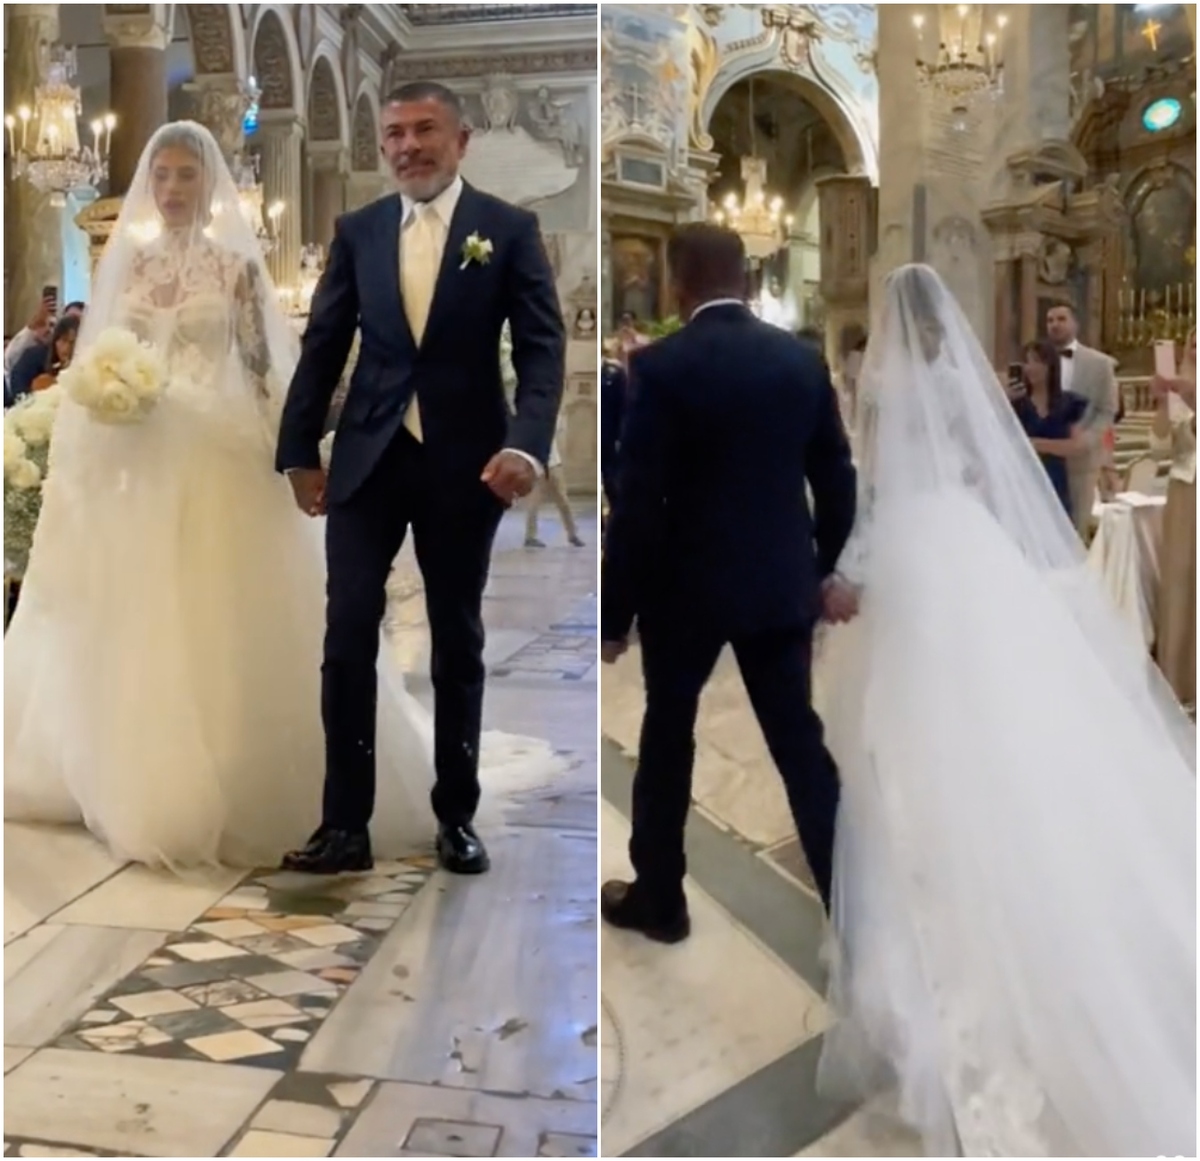 Matrimonio Mattia Zaccagni e Chiara Nasti